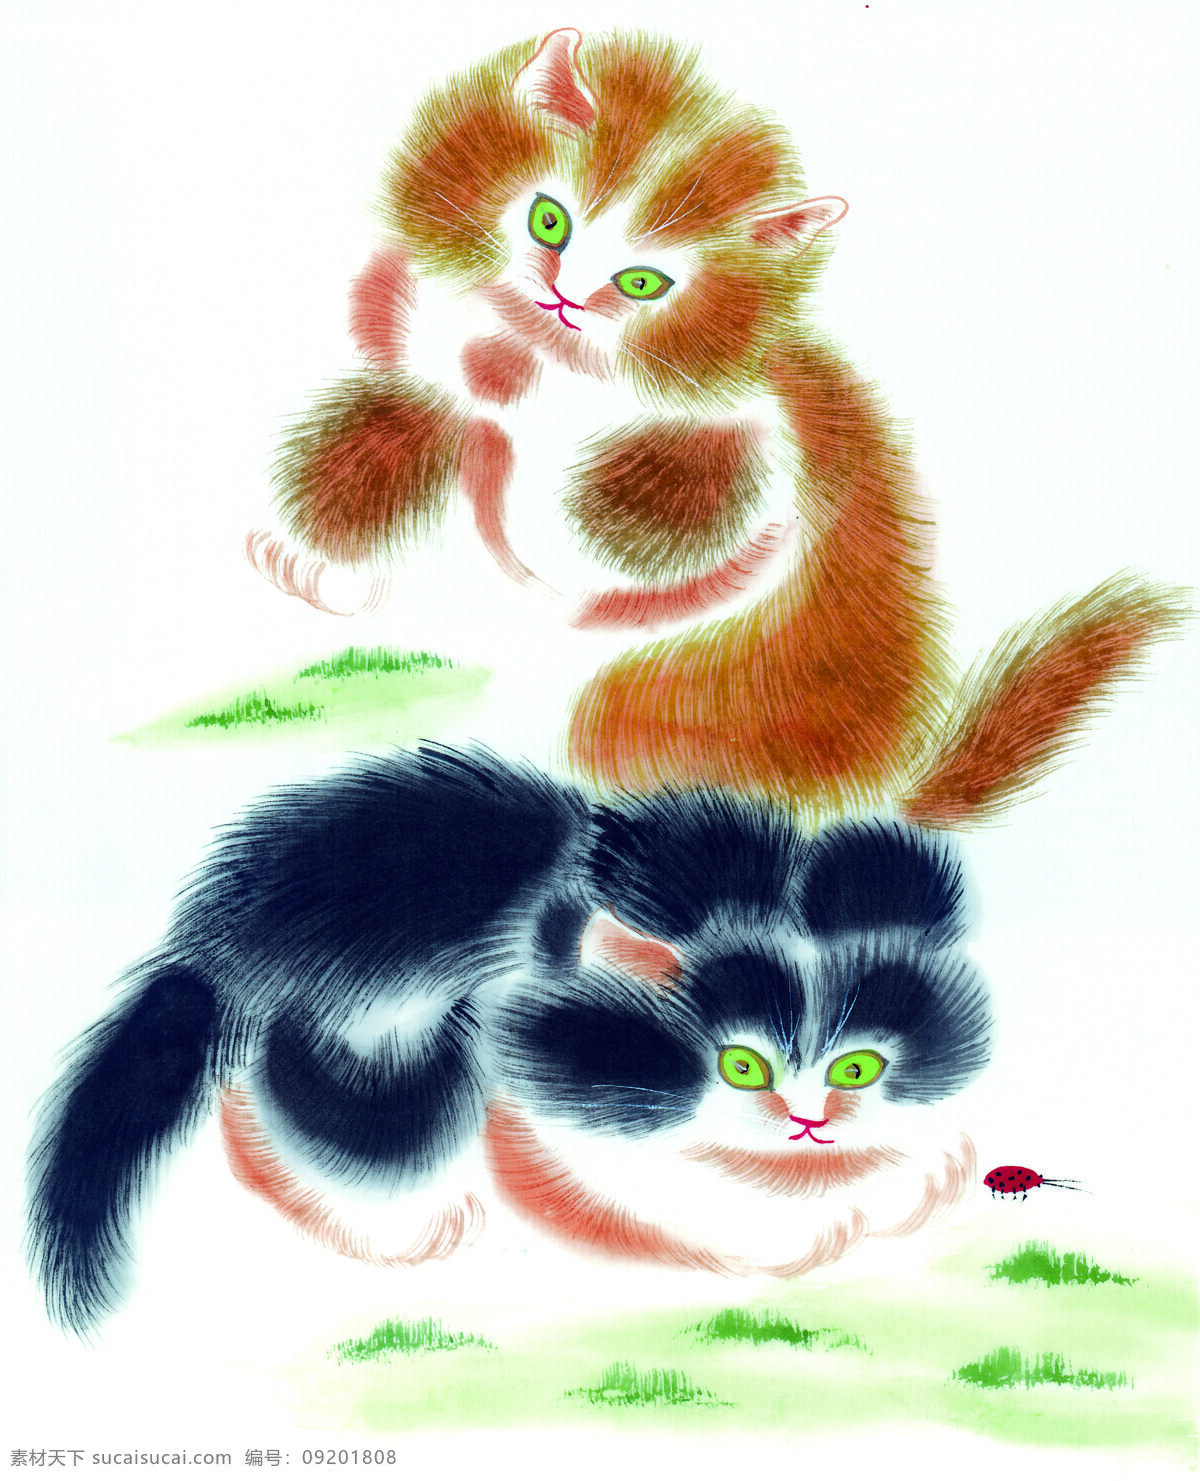 中国国画篇 猫 国画 水墨 工笔 草 中国国画篇猫 文化艺术 绘画书法